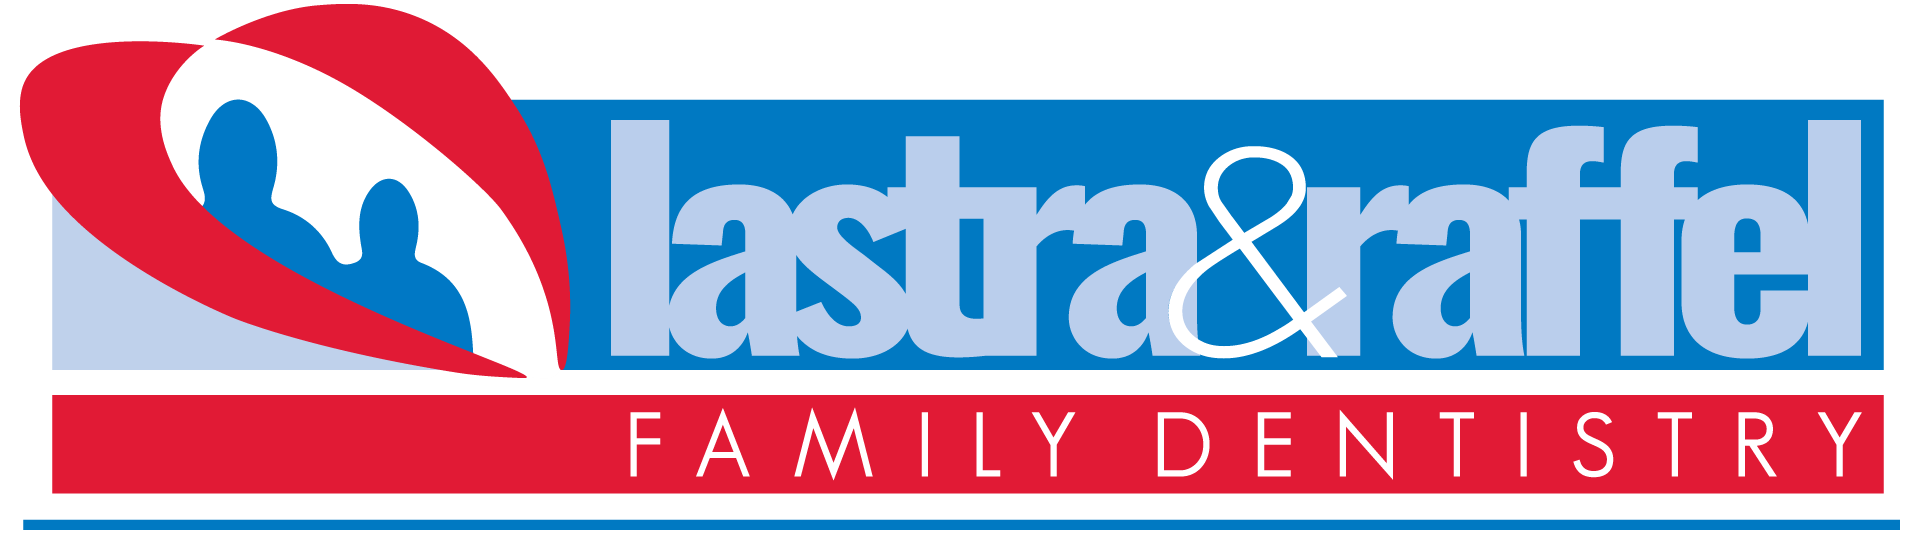 Lastra & Raffel Family Dentistry Logo